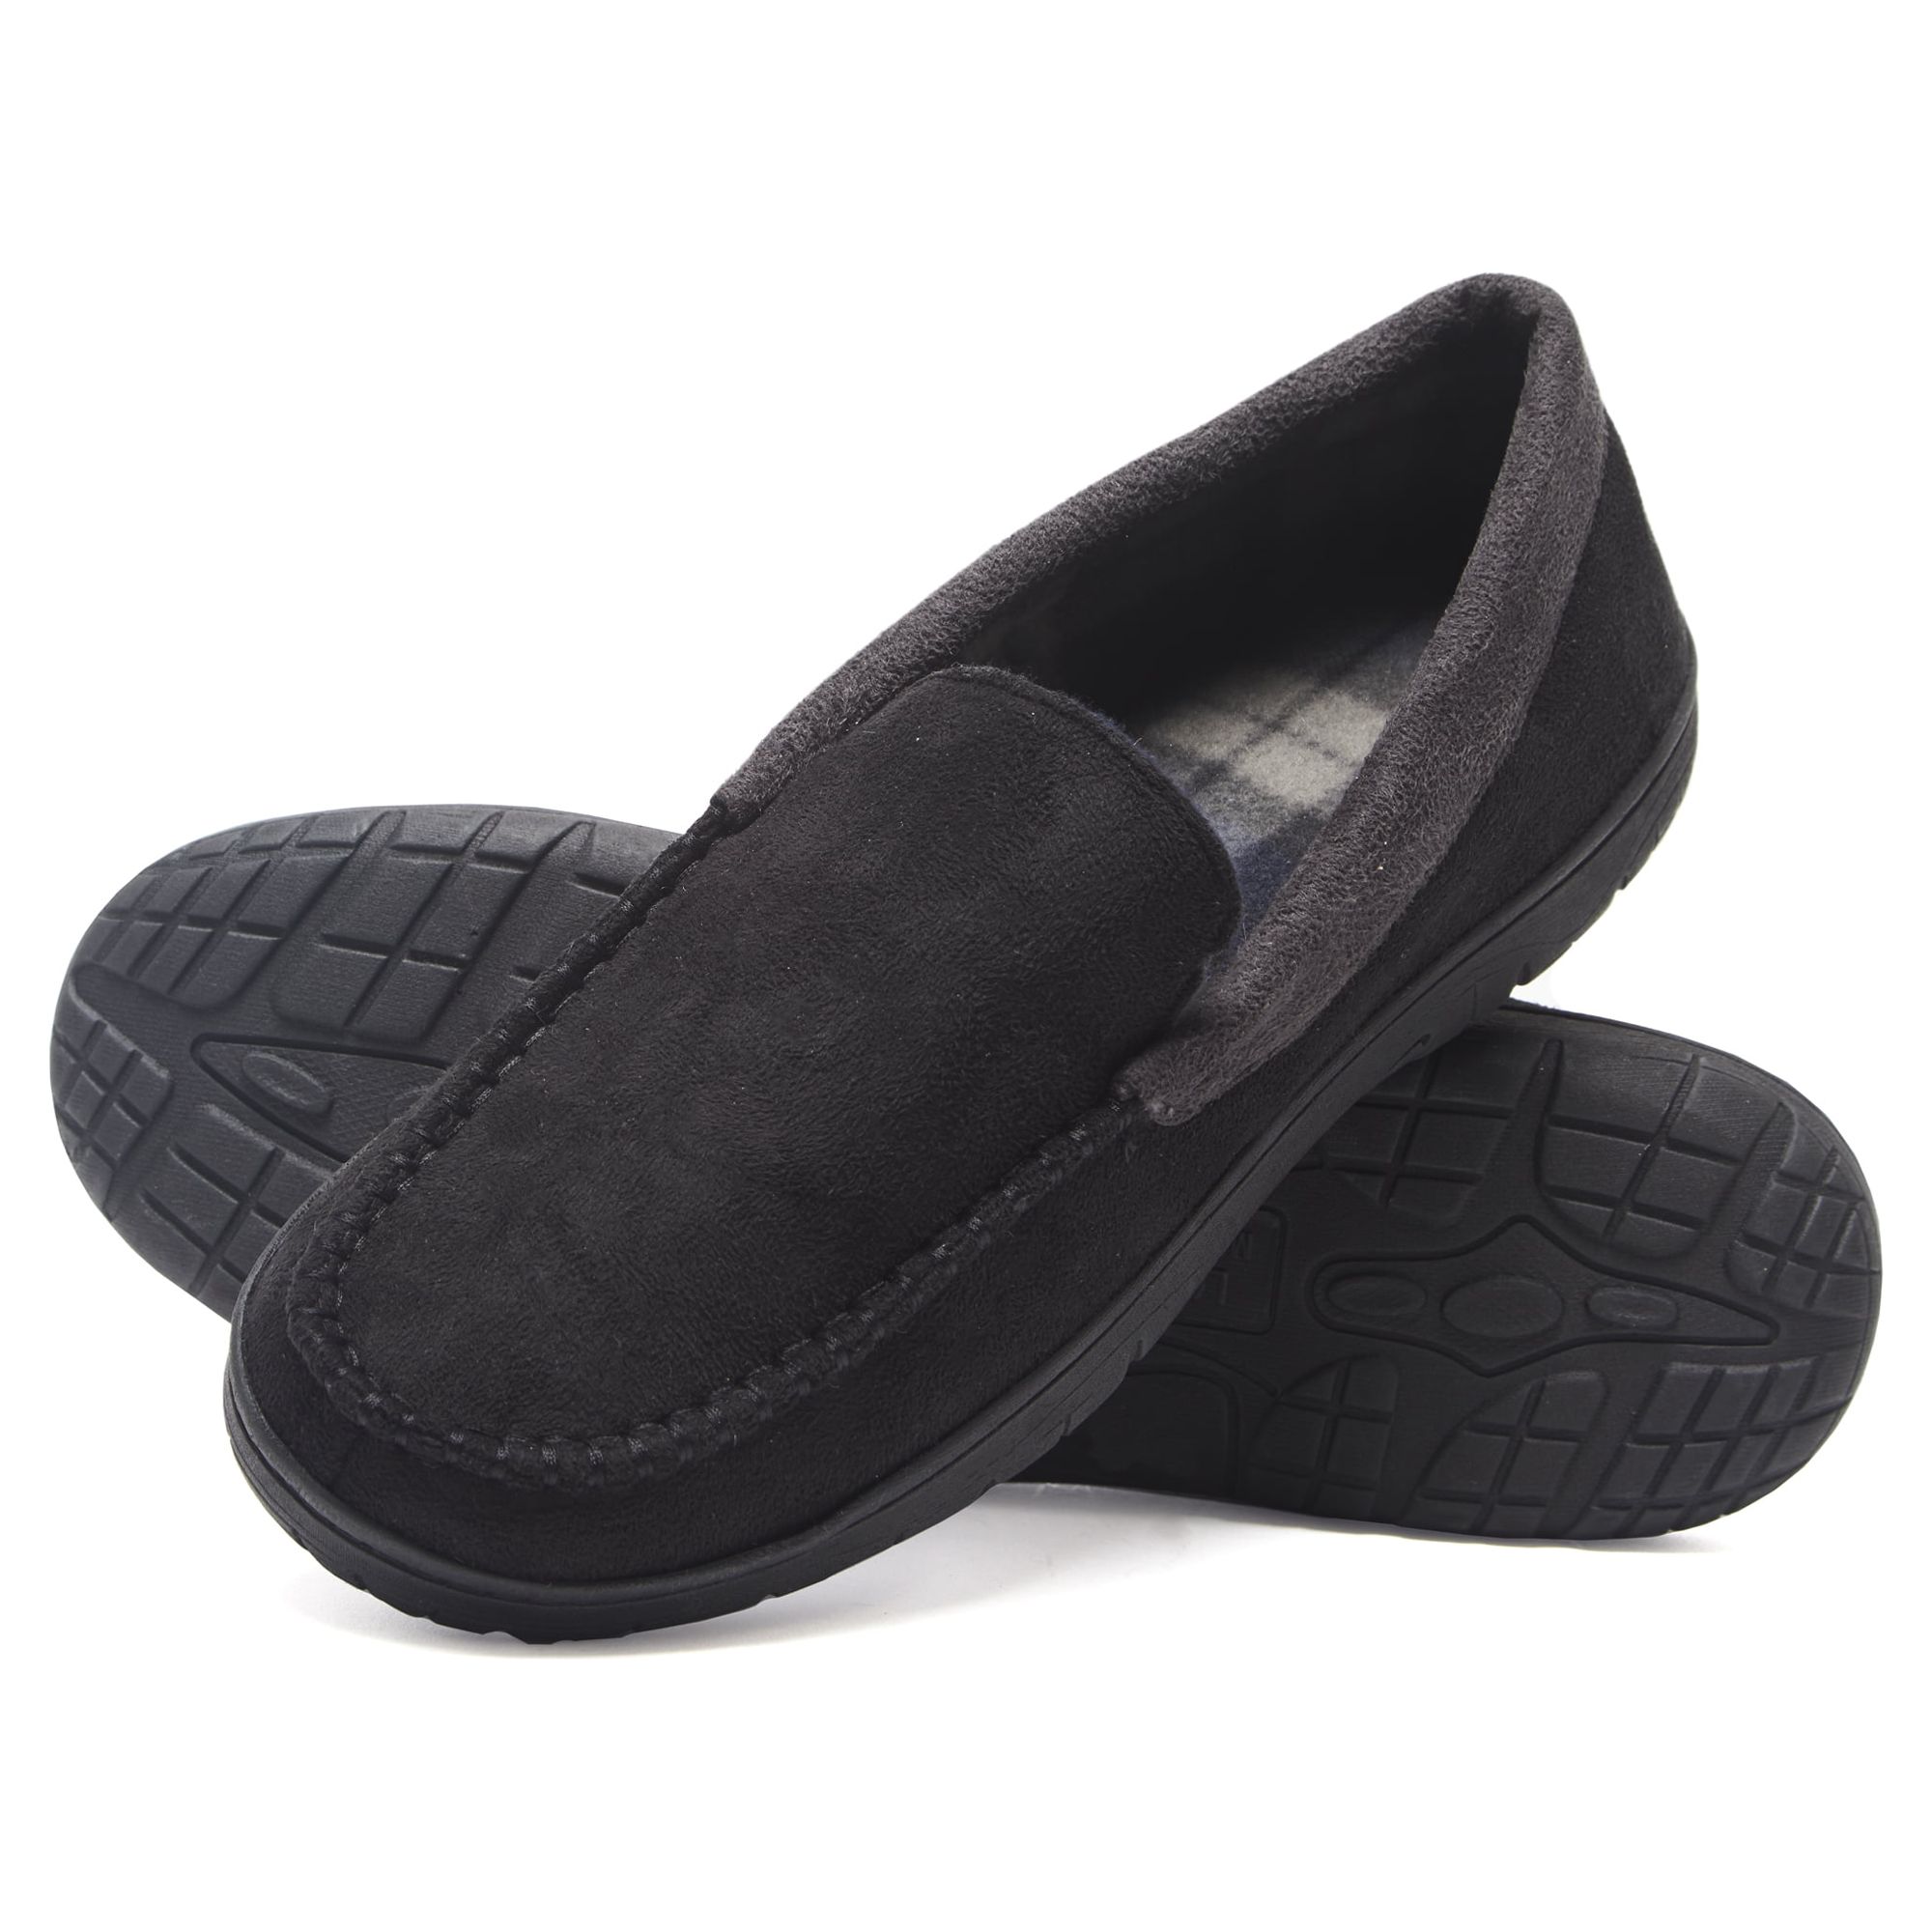 Hanes Men's Moccasin Slipper House Shoe With Indoor Outdoor Memory Foam ...